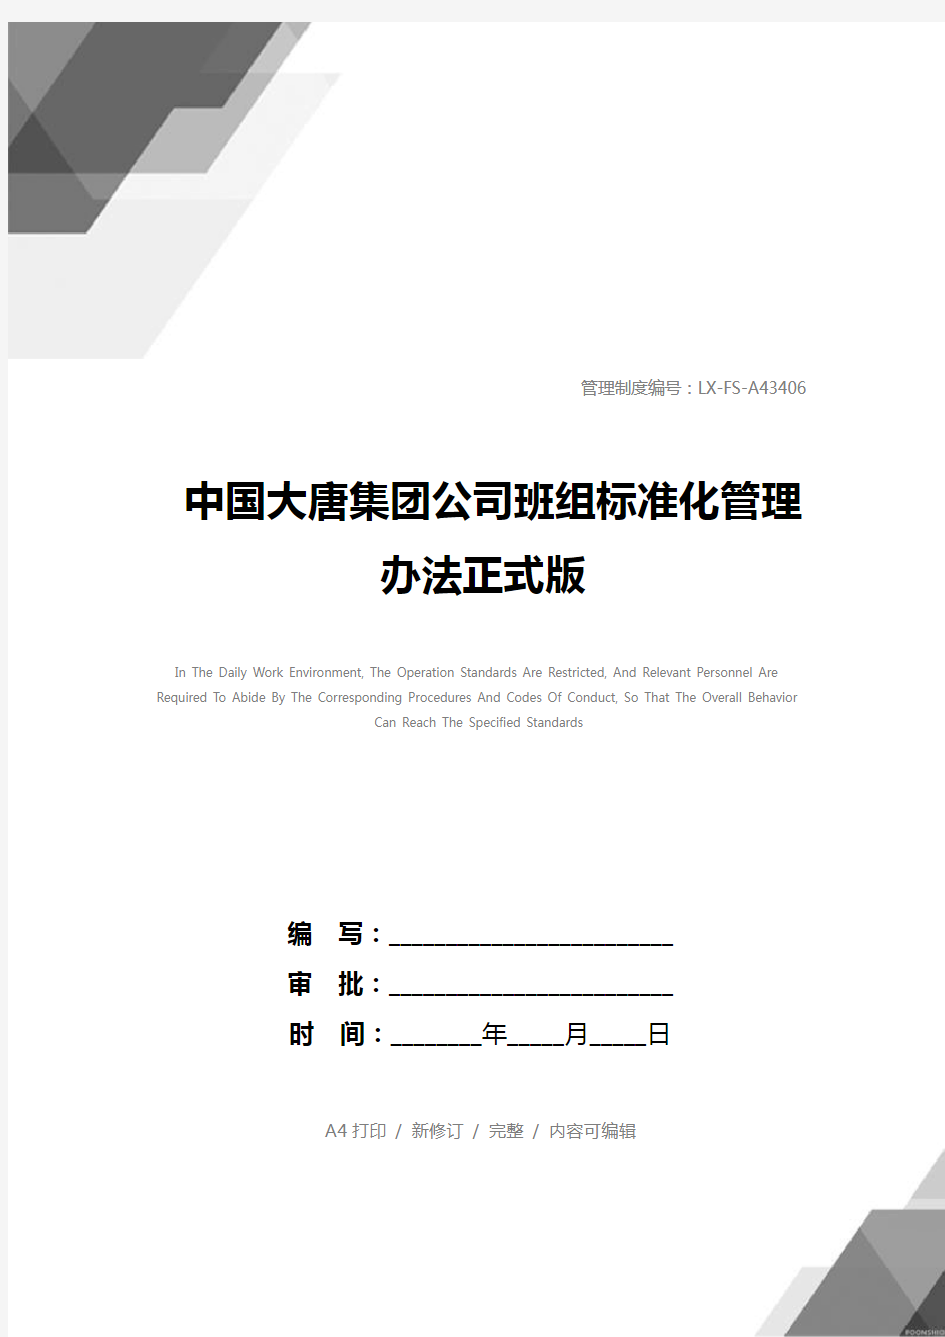 中国大唐集团公司班组标准化管理办法正式版